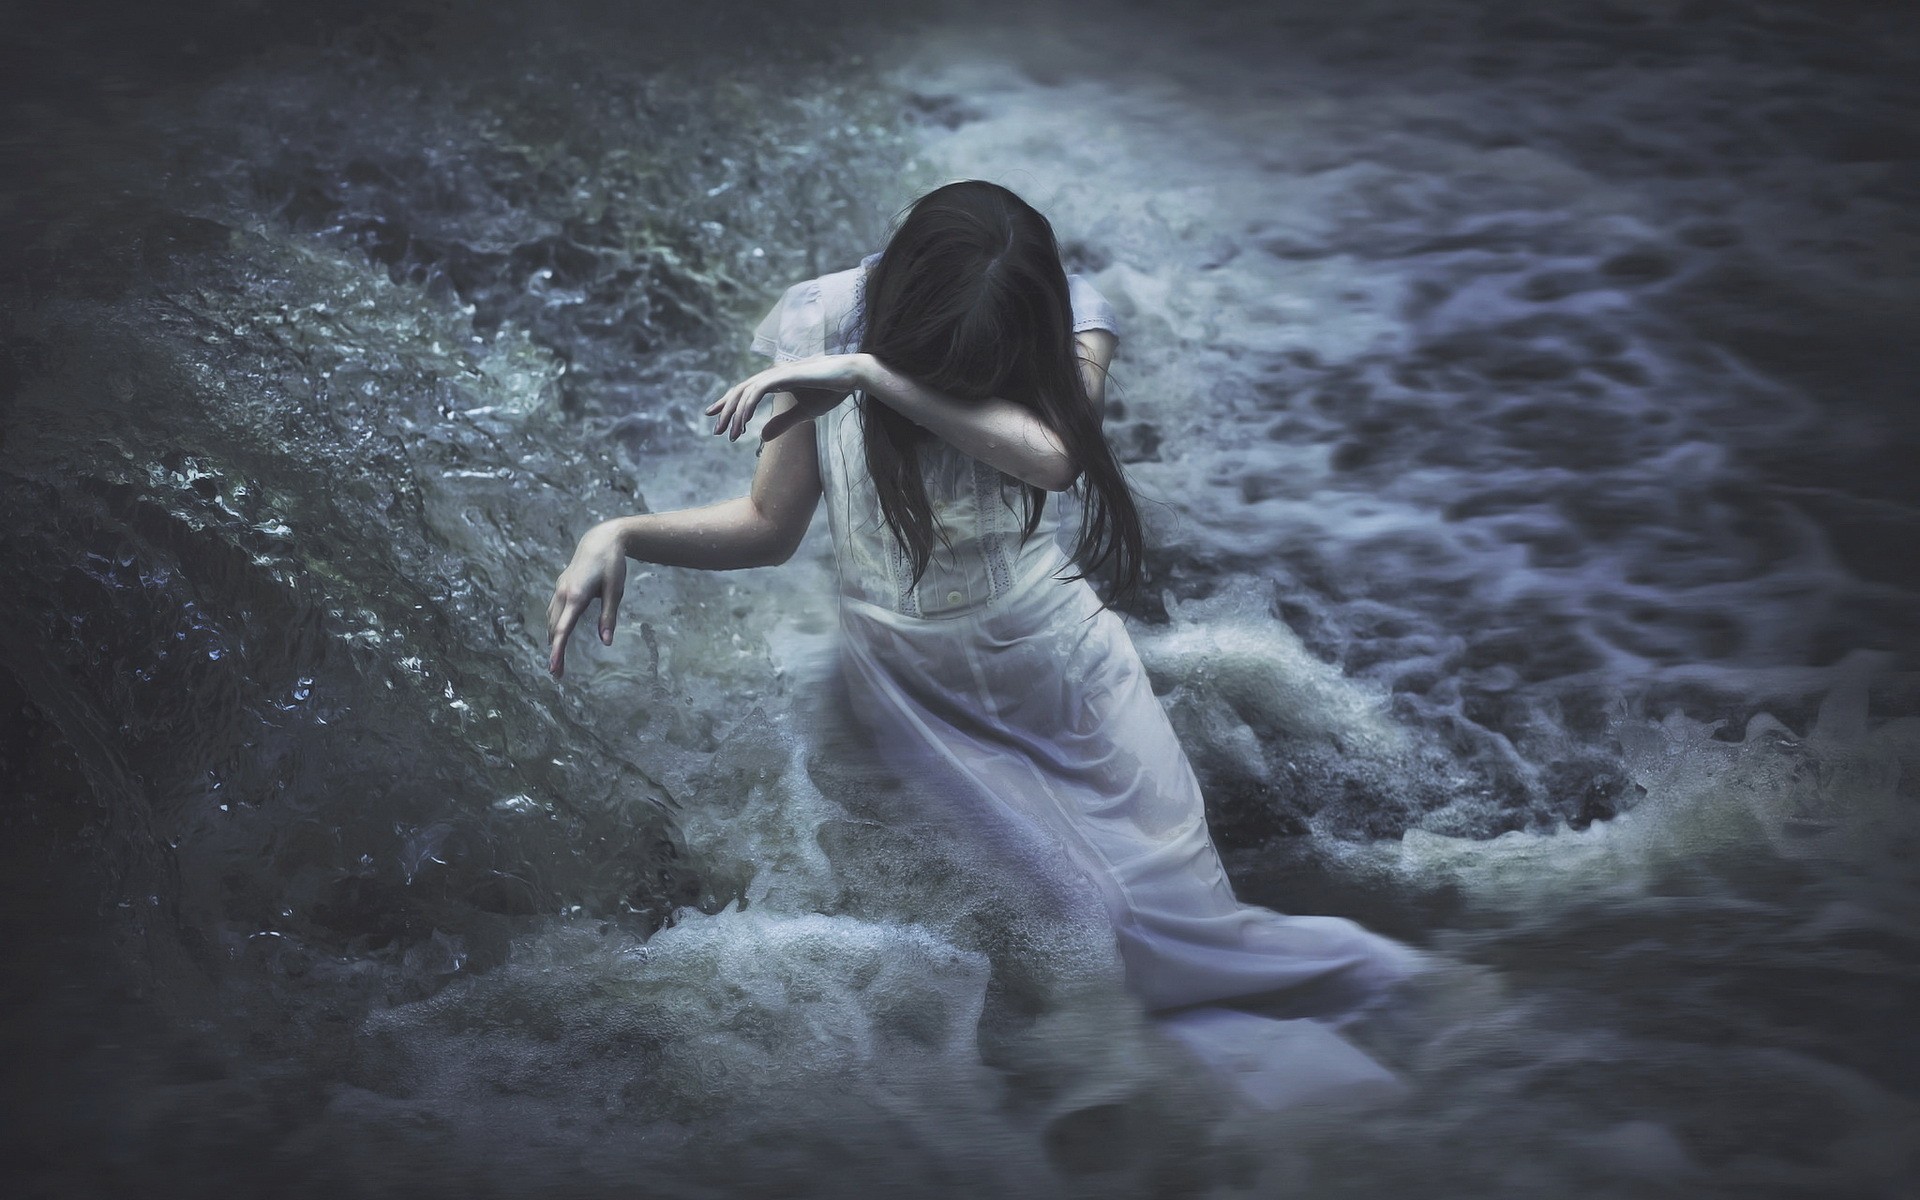 О чем дева плачет. Фотосессия в воде. Девушка в воде. Девушка выходит из воды. Девушка стоящая в воде.